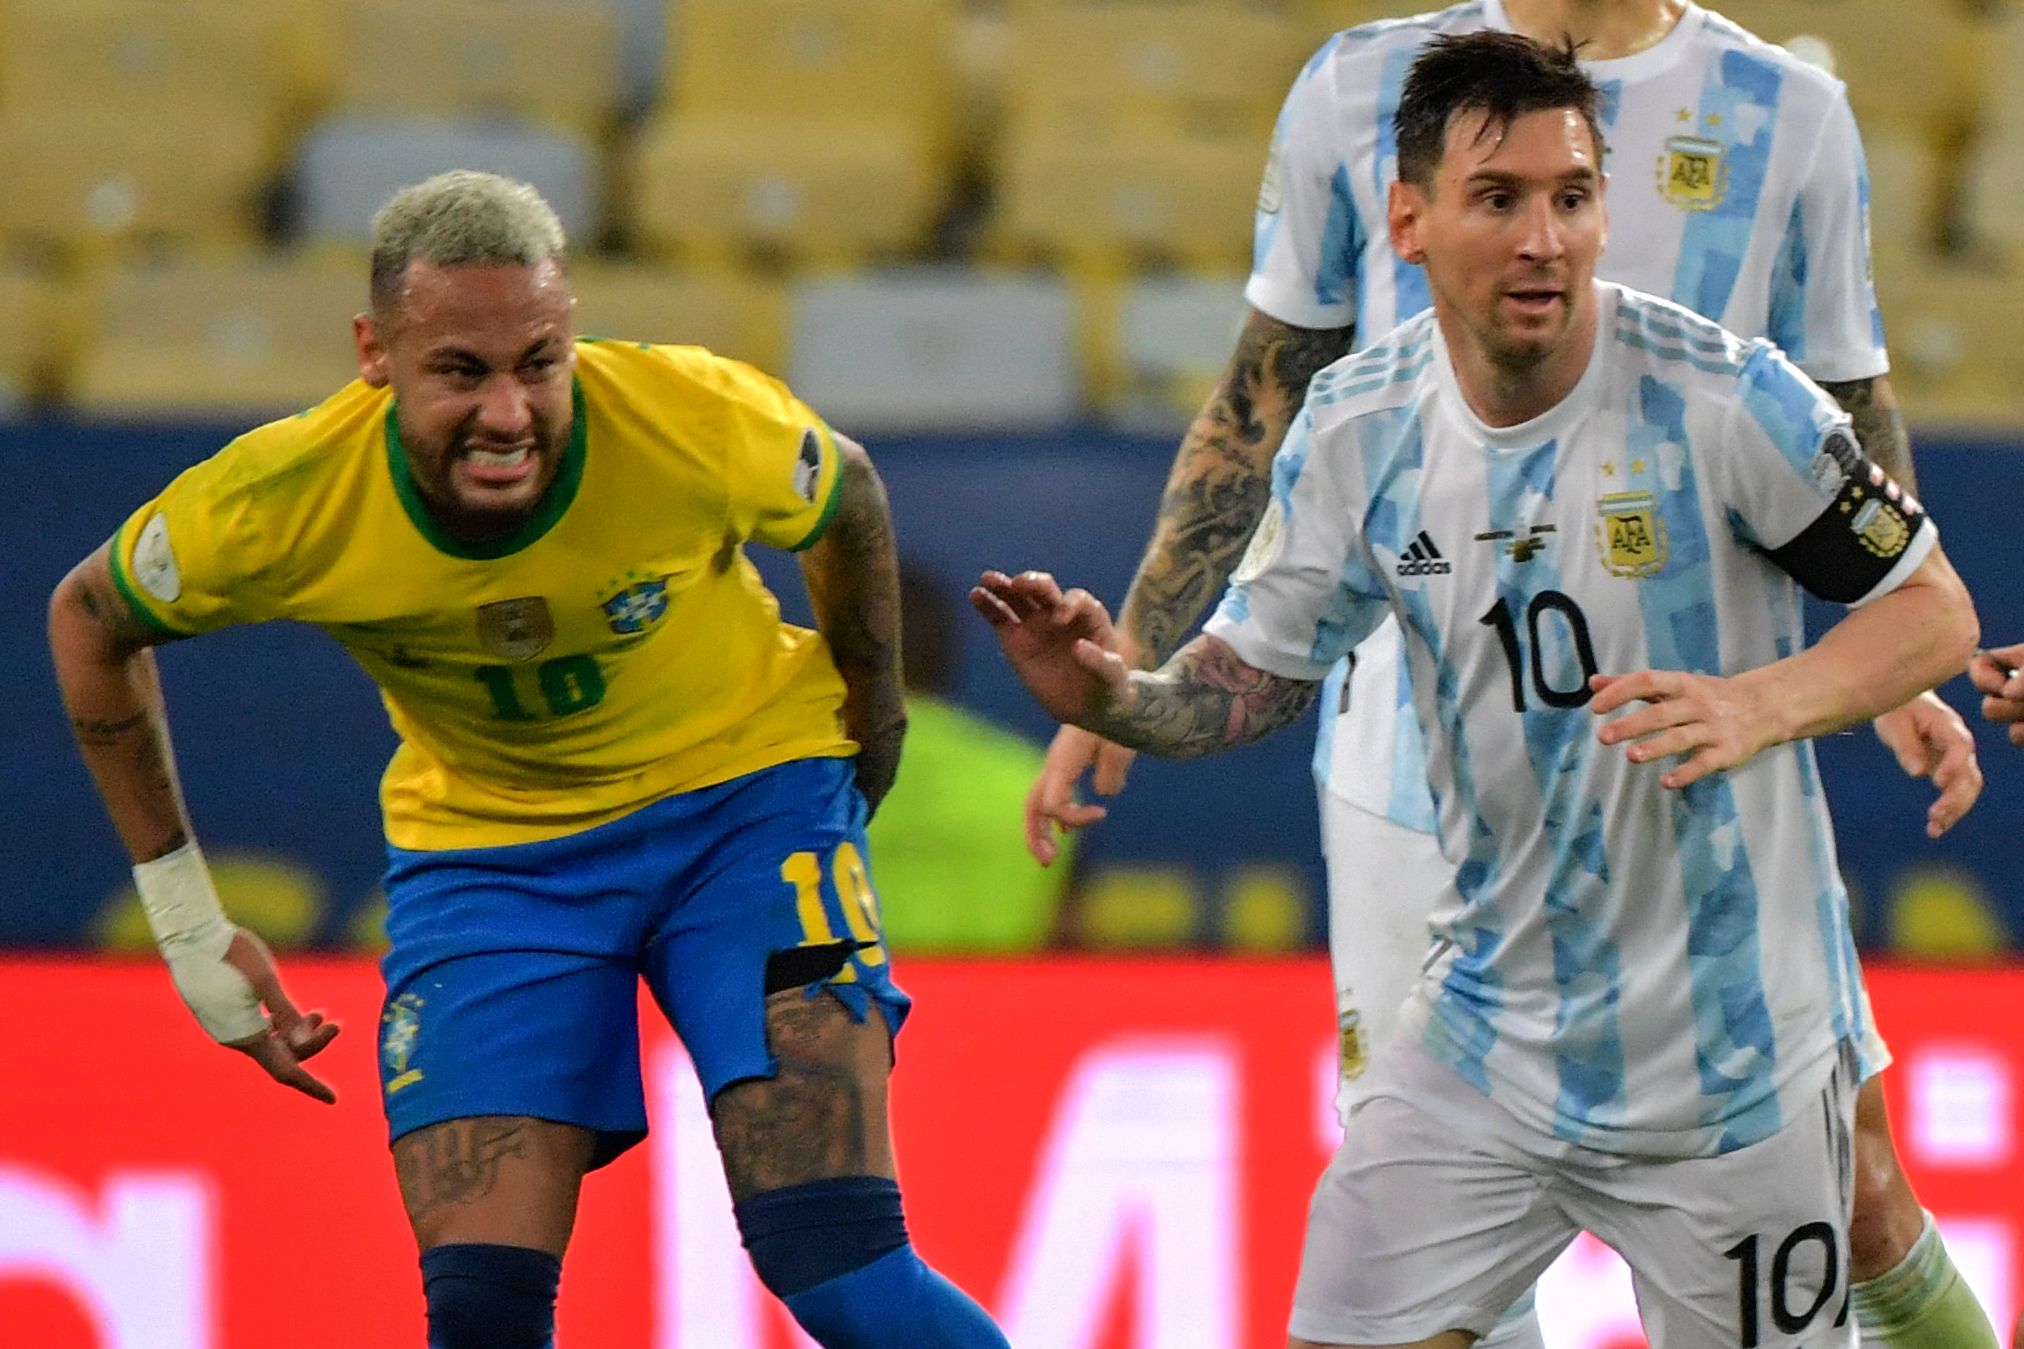 GALERIA DE FOTOS: Las mejores imágenes de Argentina campeón de la Copa América 2021